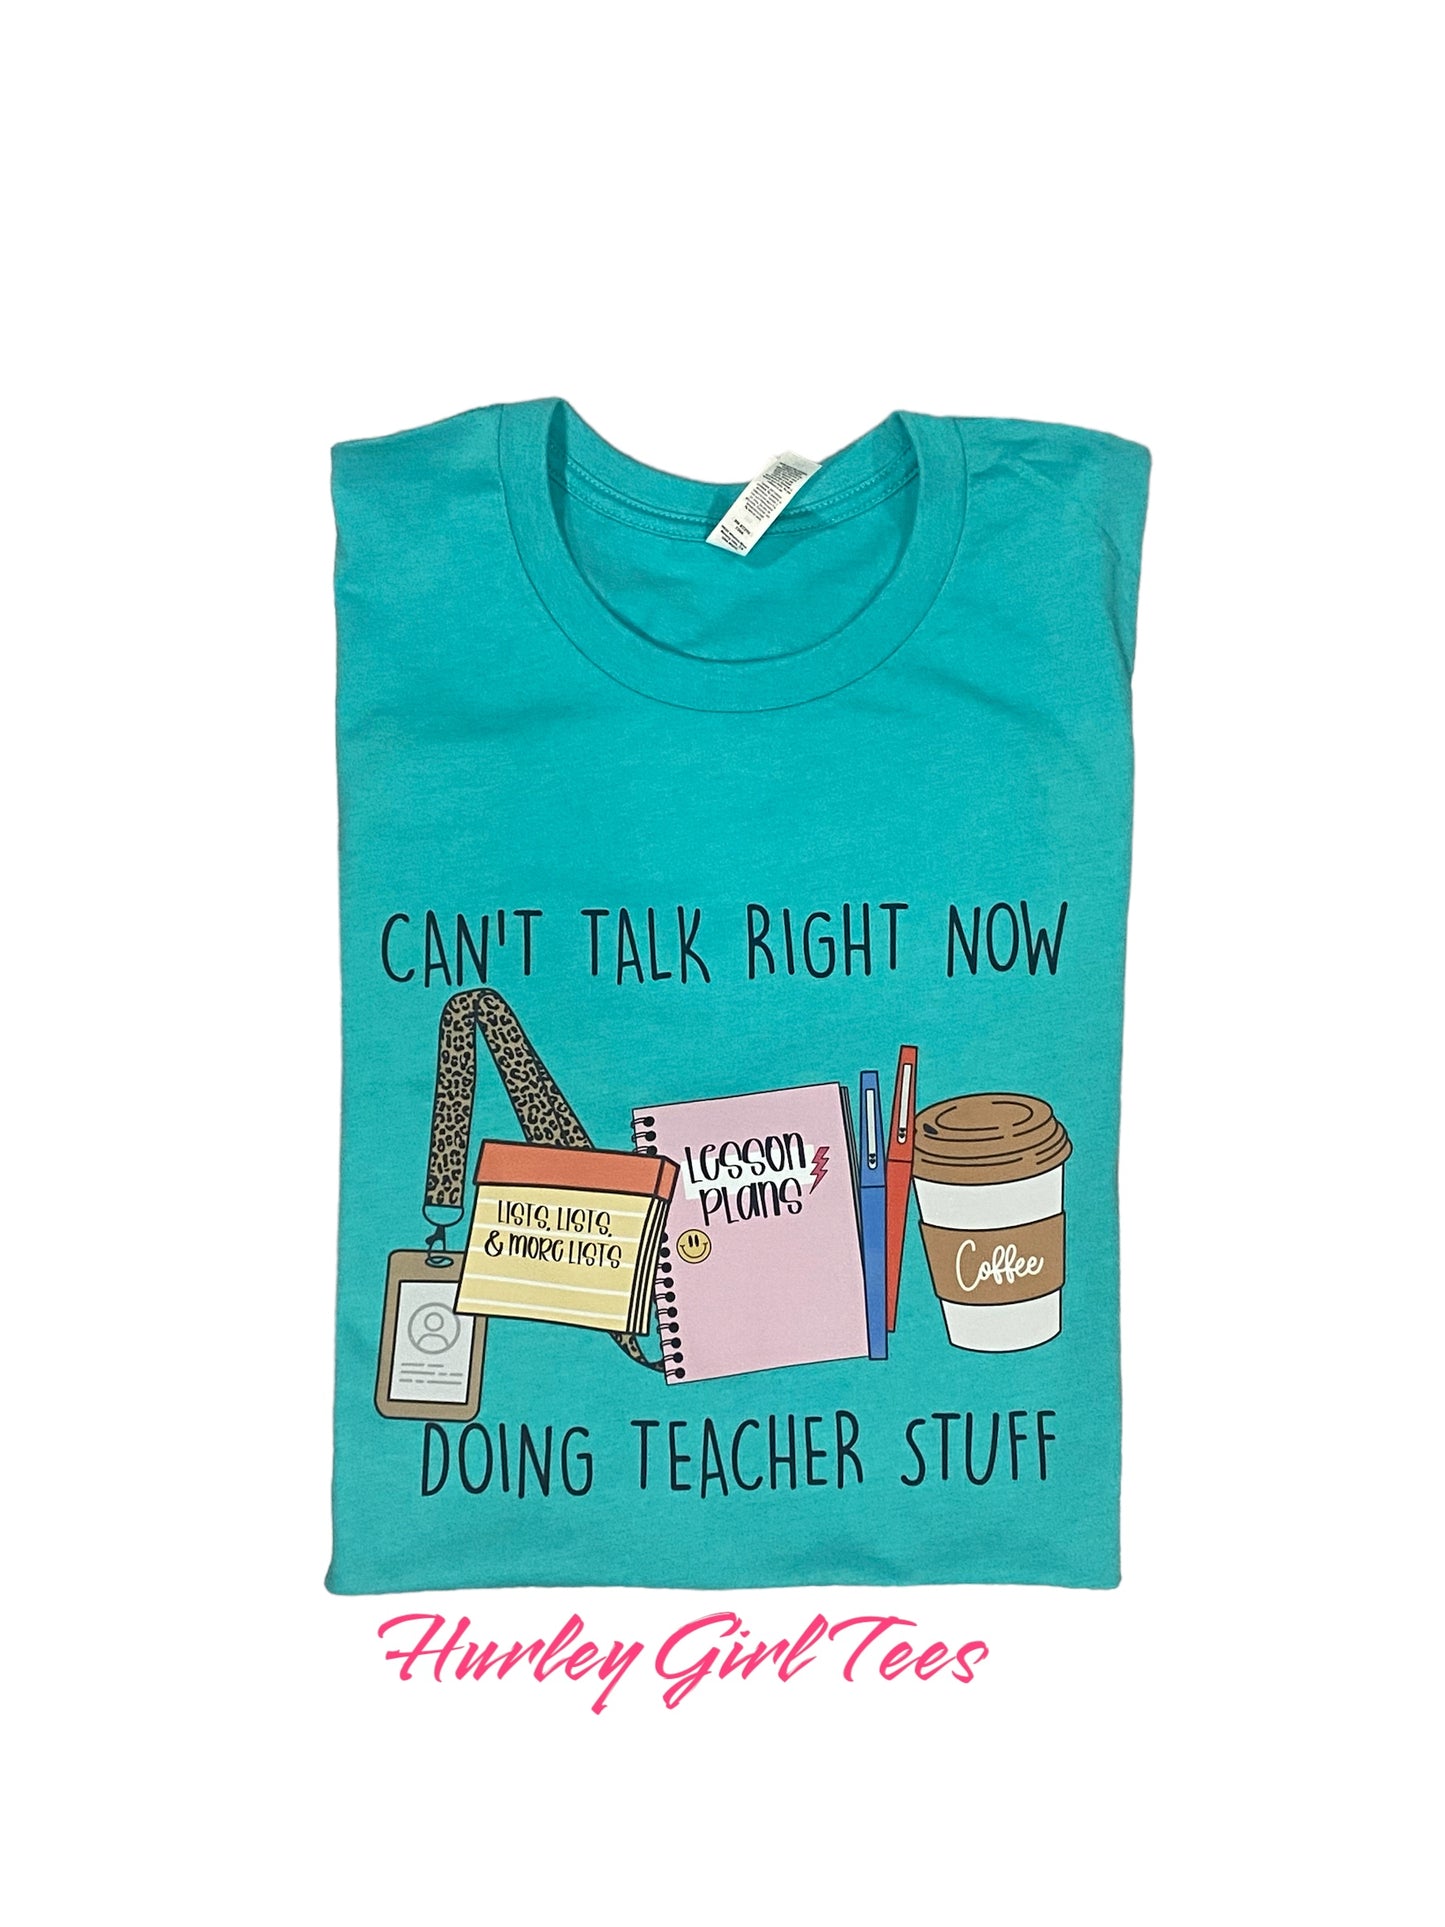 Can’t talk right now doing teacher stuff t-shirt